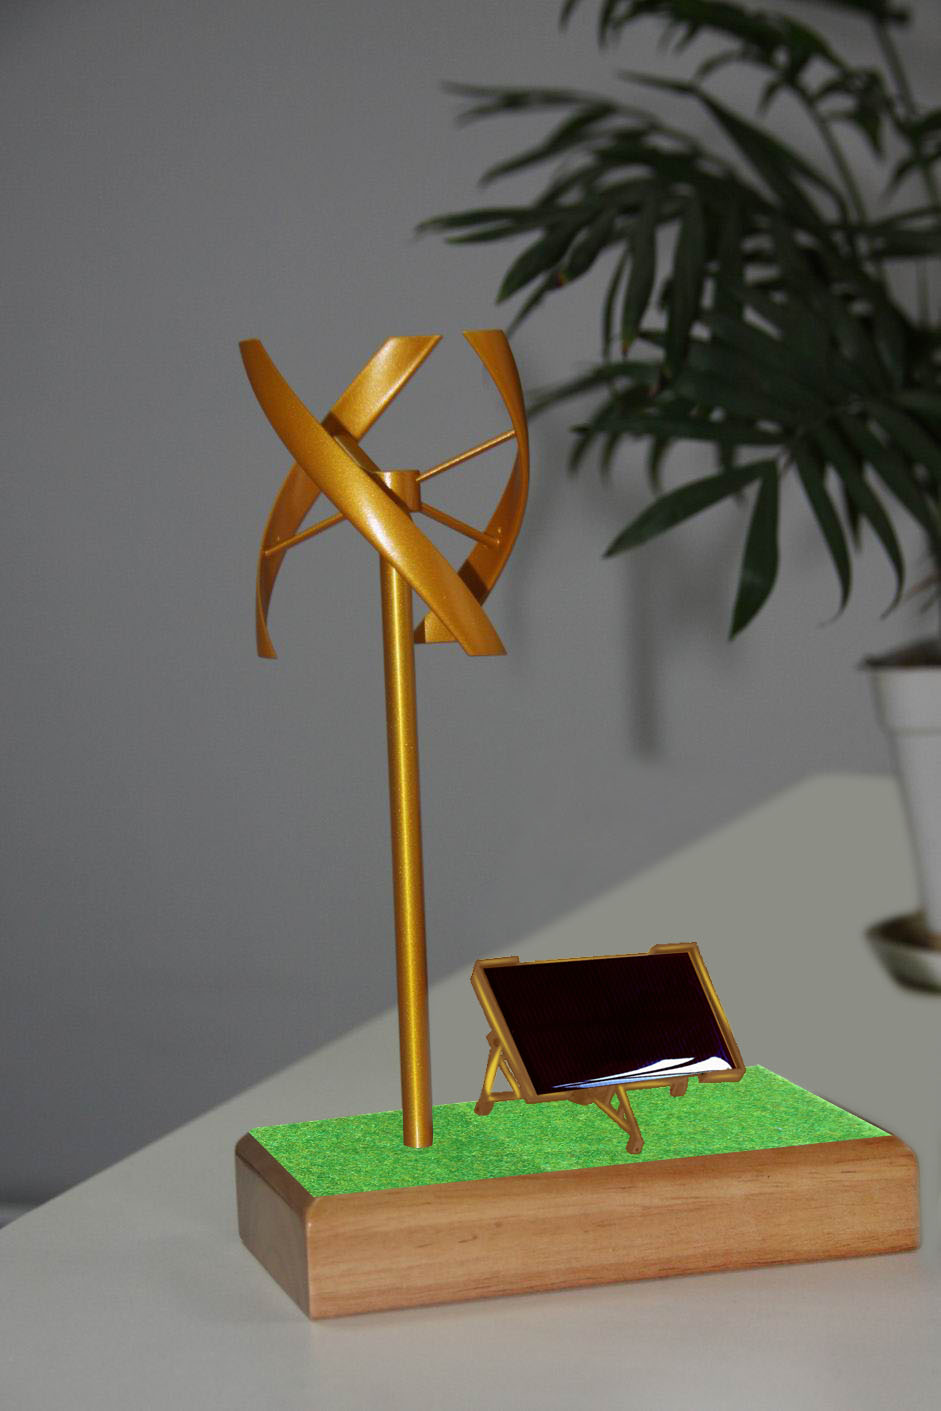 垂直轴风力发电机模型